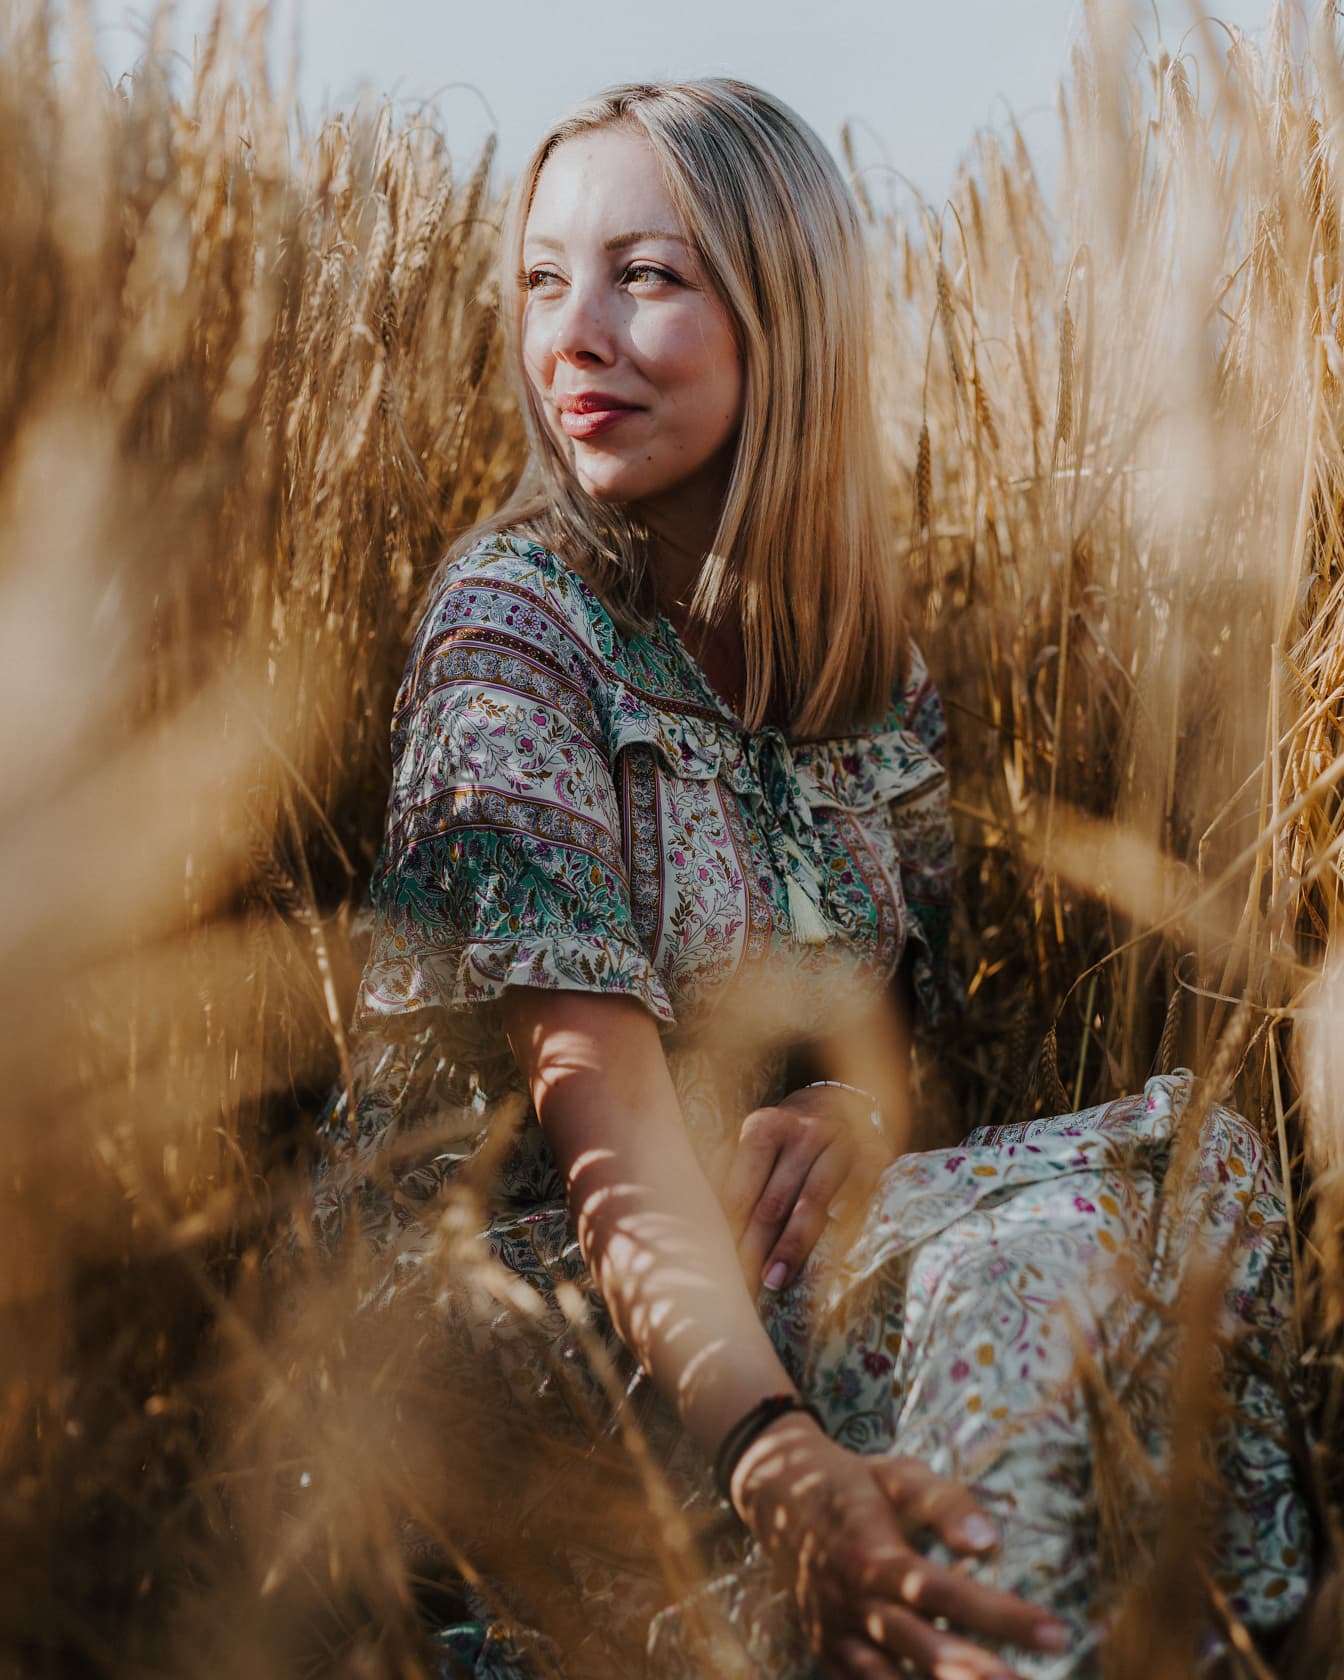 Magnifique blonde assise dans un champ de blé photographie majestueuse